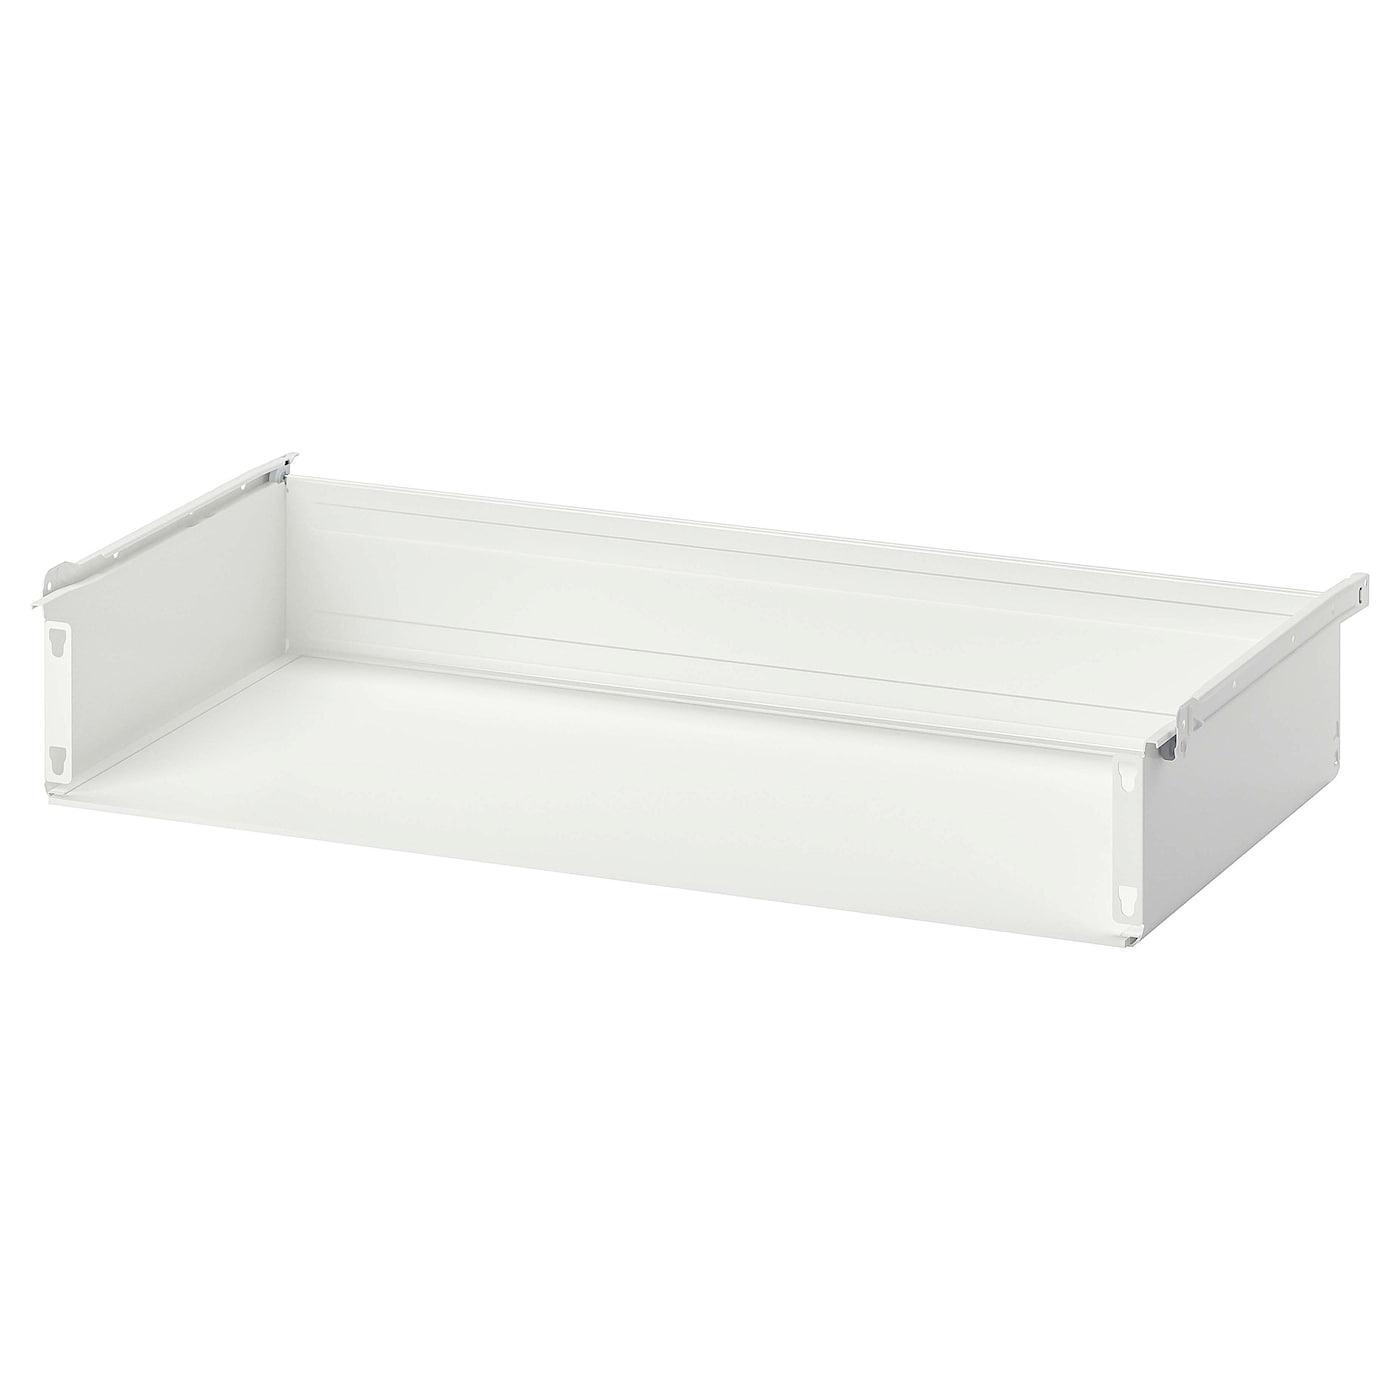 Ящик без фронтальной панели - IKEA HJALPA/HJÄLPA, 60x55 см, белый ХЭЛПА ИКЕА